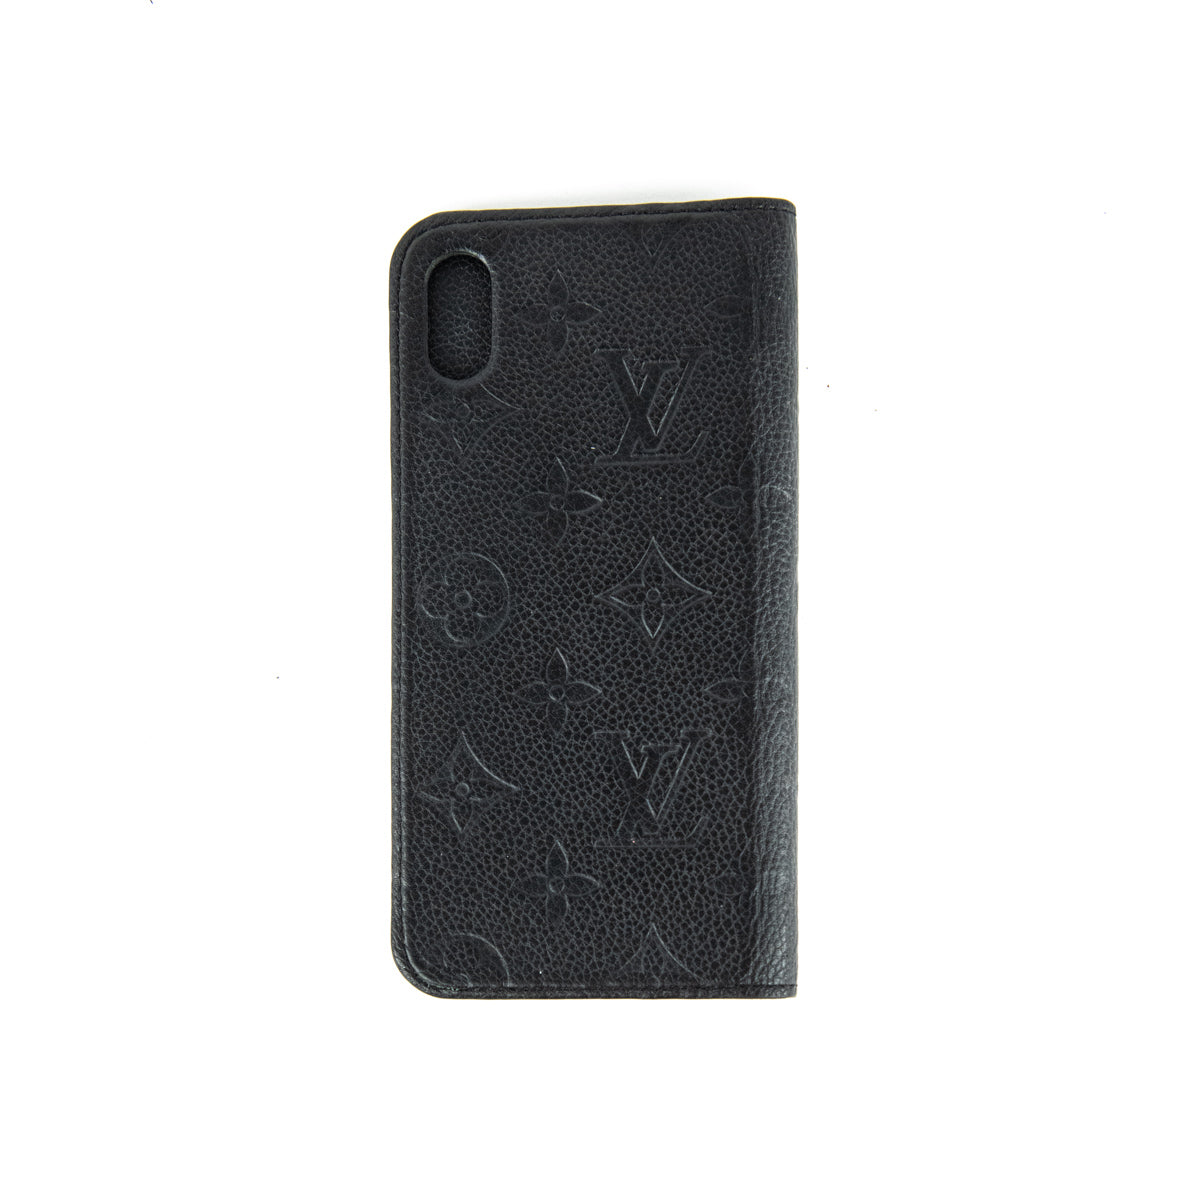 Authentic Louis Vuitton Iphone X phone case